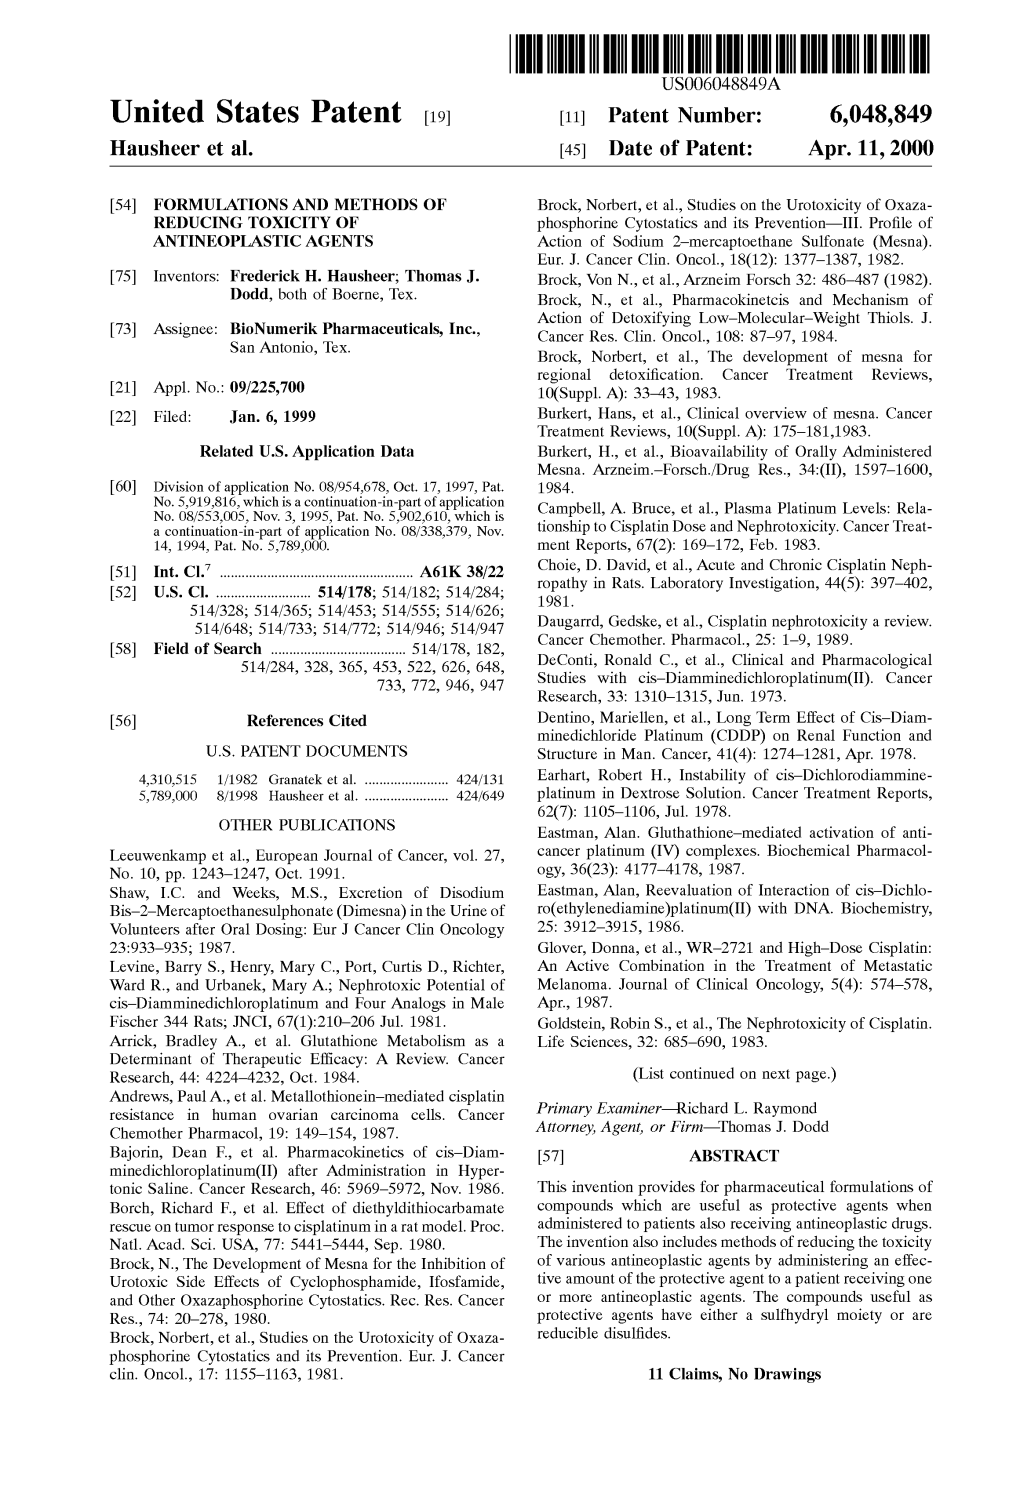 United States Patent (19) 11 Patent Number: 6,048,849 Hausheer Et Al